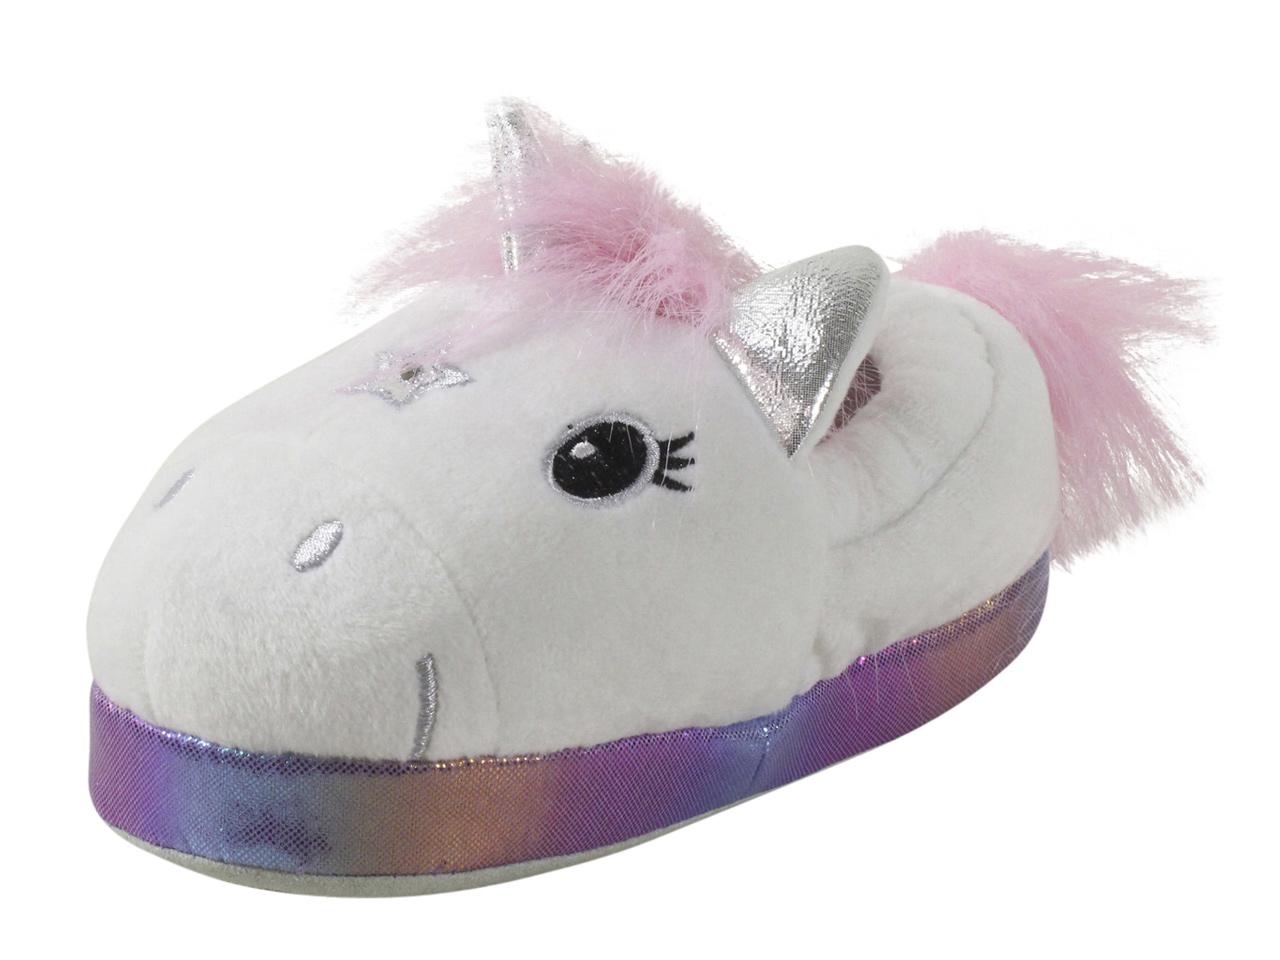 unicorn shoes light up